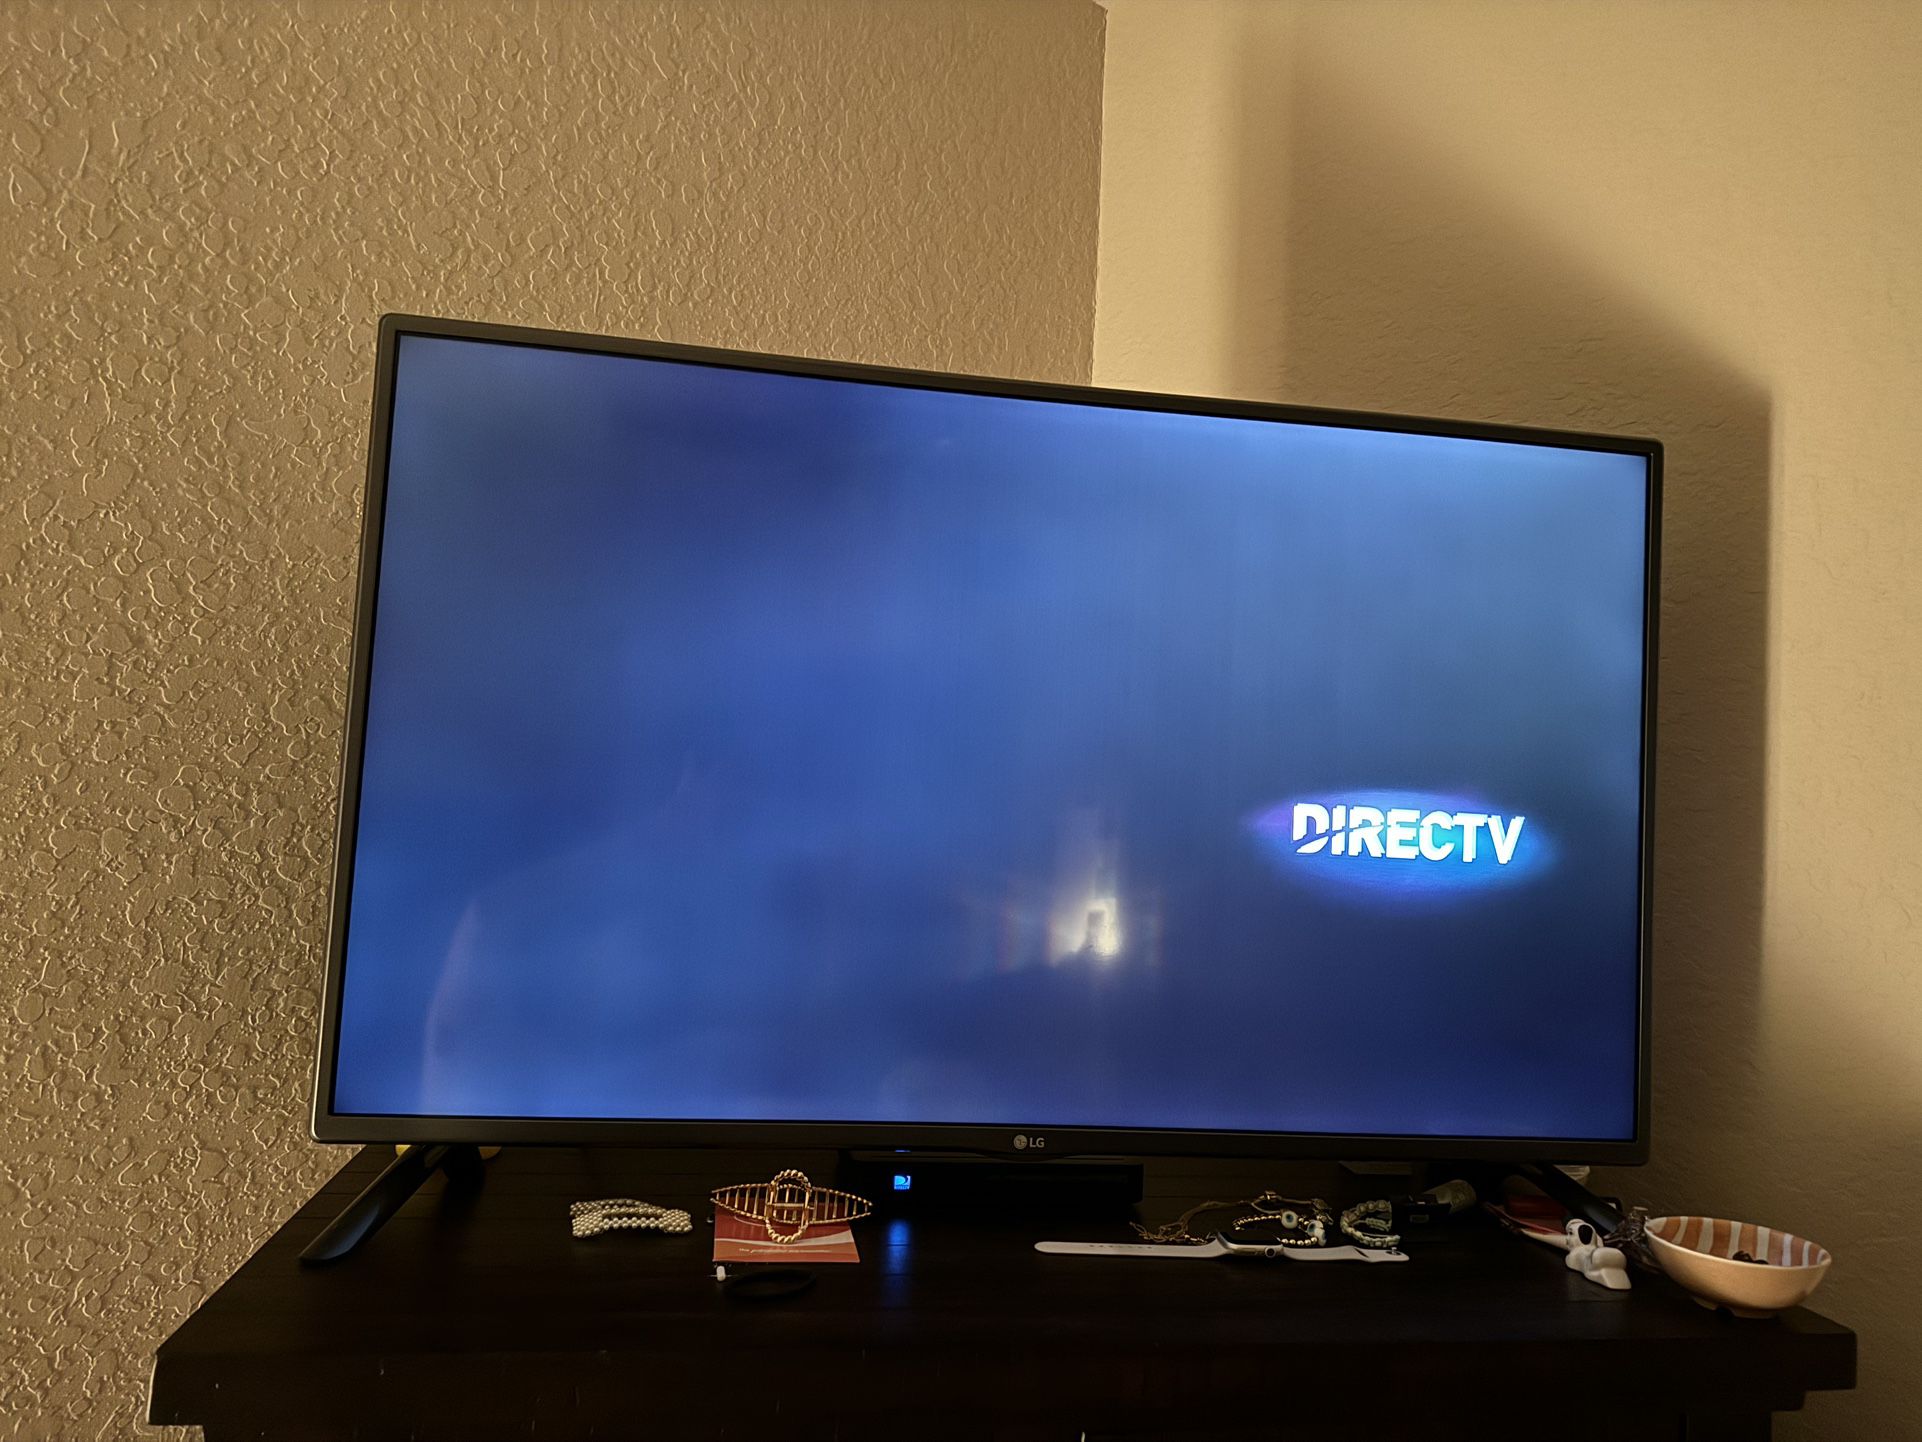 LG 42”inch TV